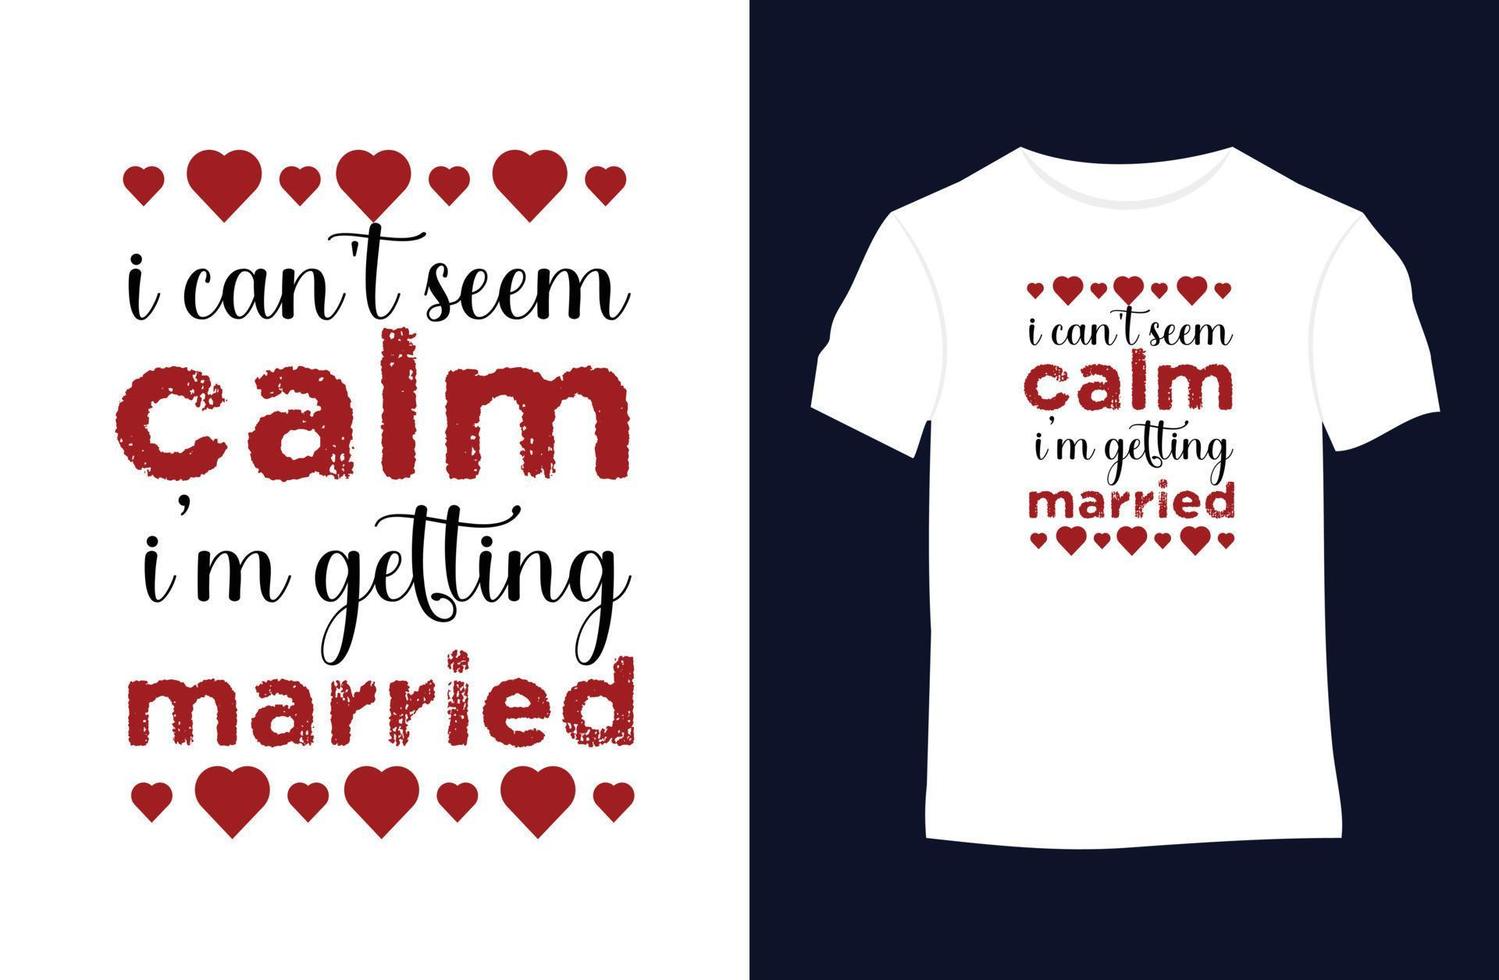 conception de t-shirt vecteur Saint-Valentin avec silhouettes, typographie, impression, illustration vectorielle